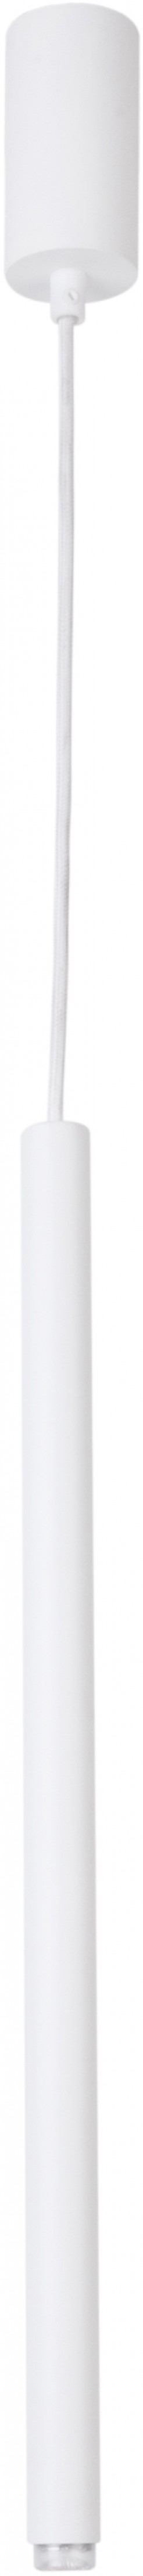 Lampa wisząca Sigma biały prosty 33150